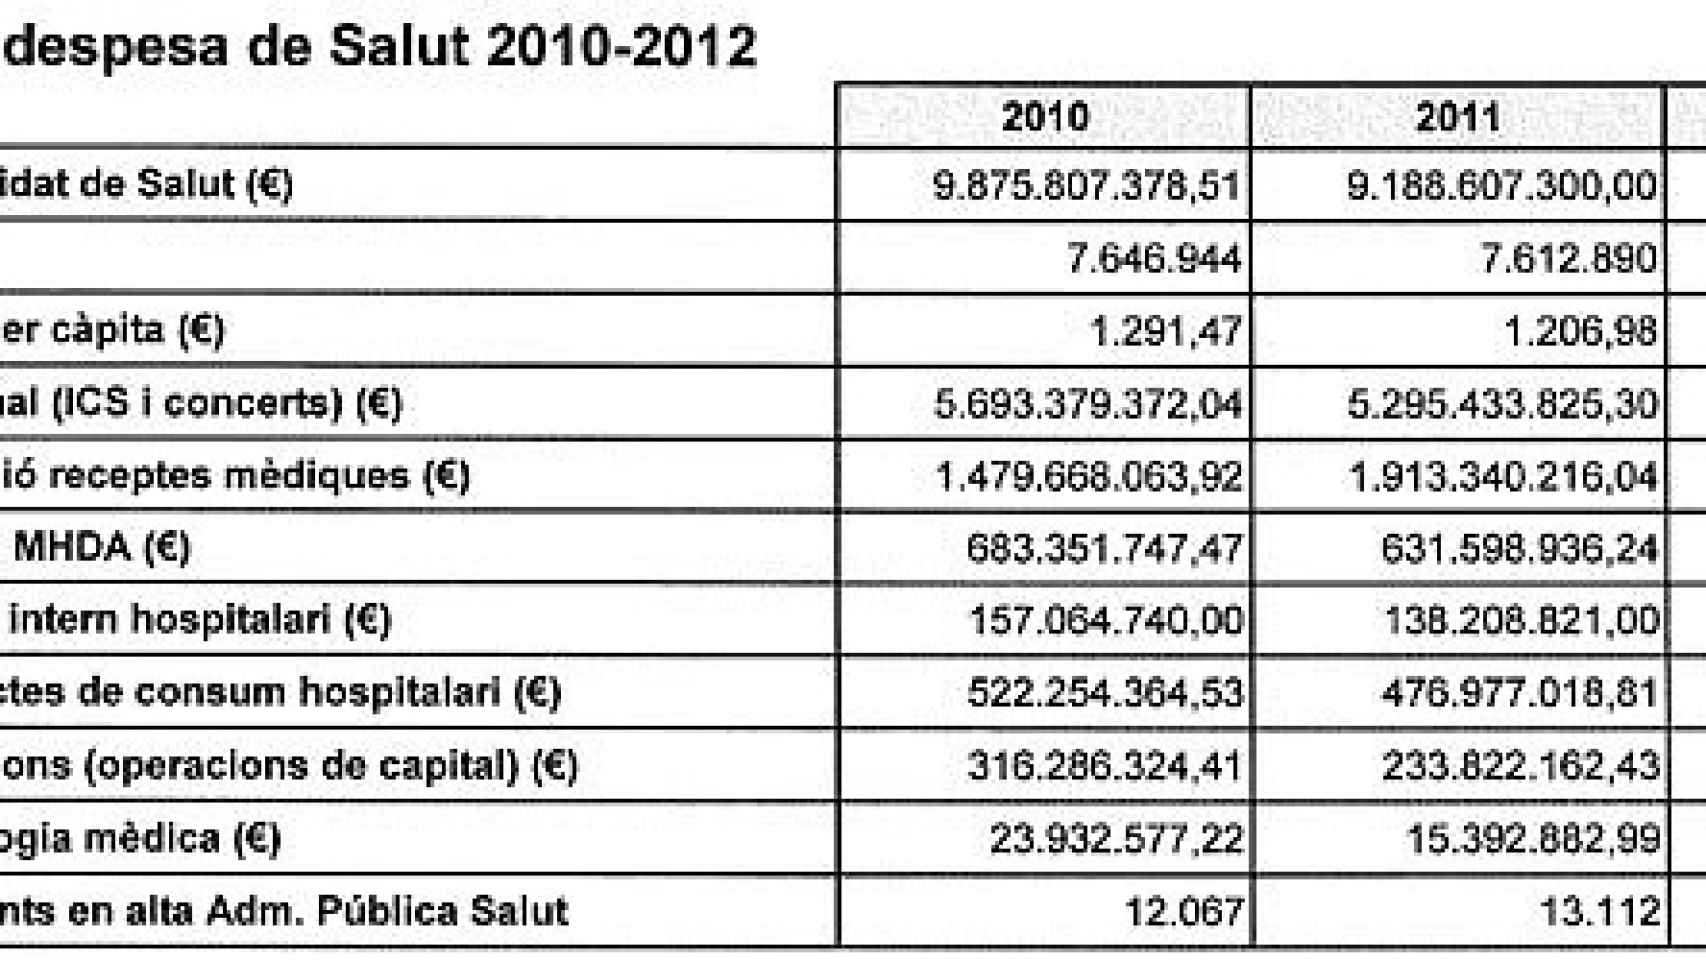 Evolución del presupuesto consolidado de la Consejería de Salud entre 2010 y 2012